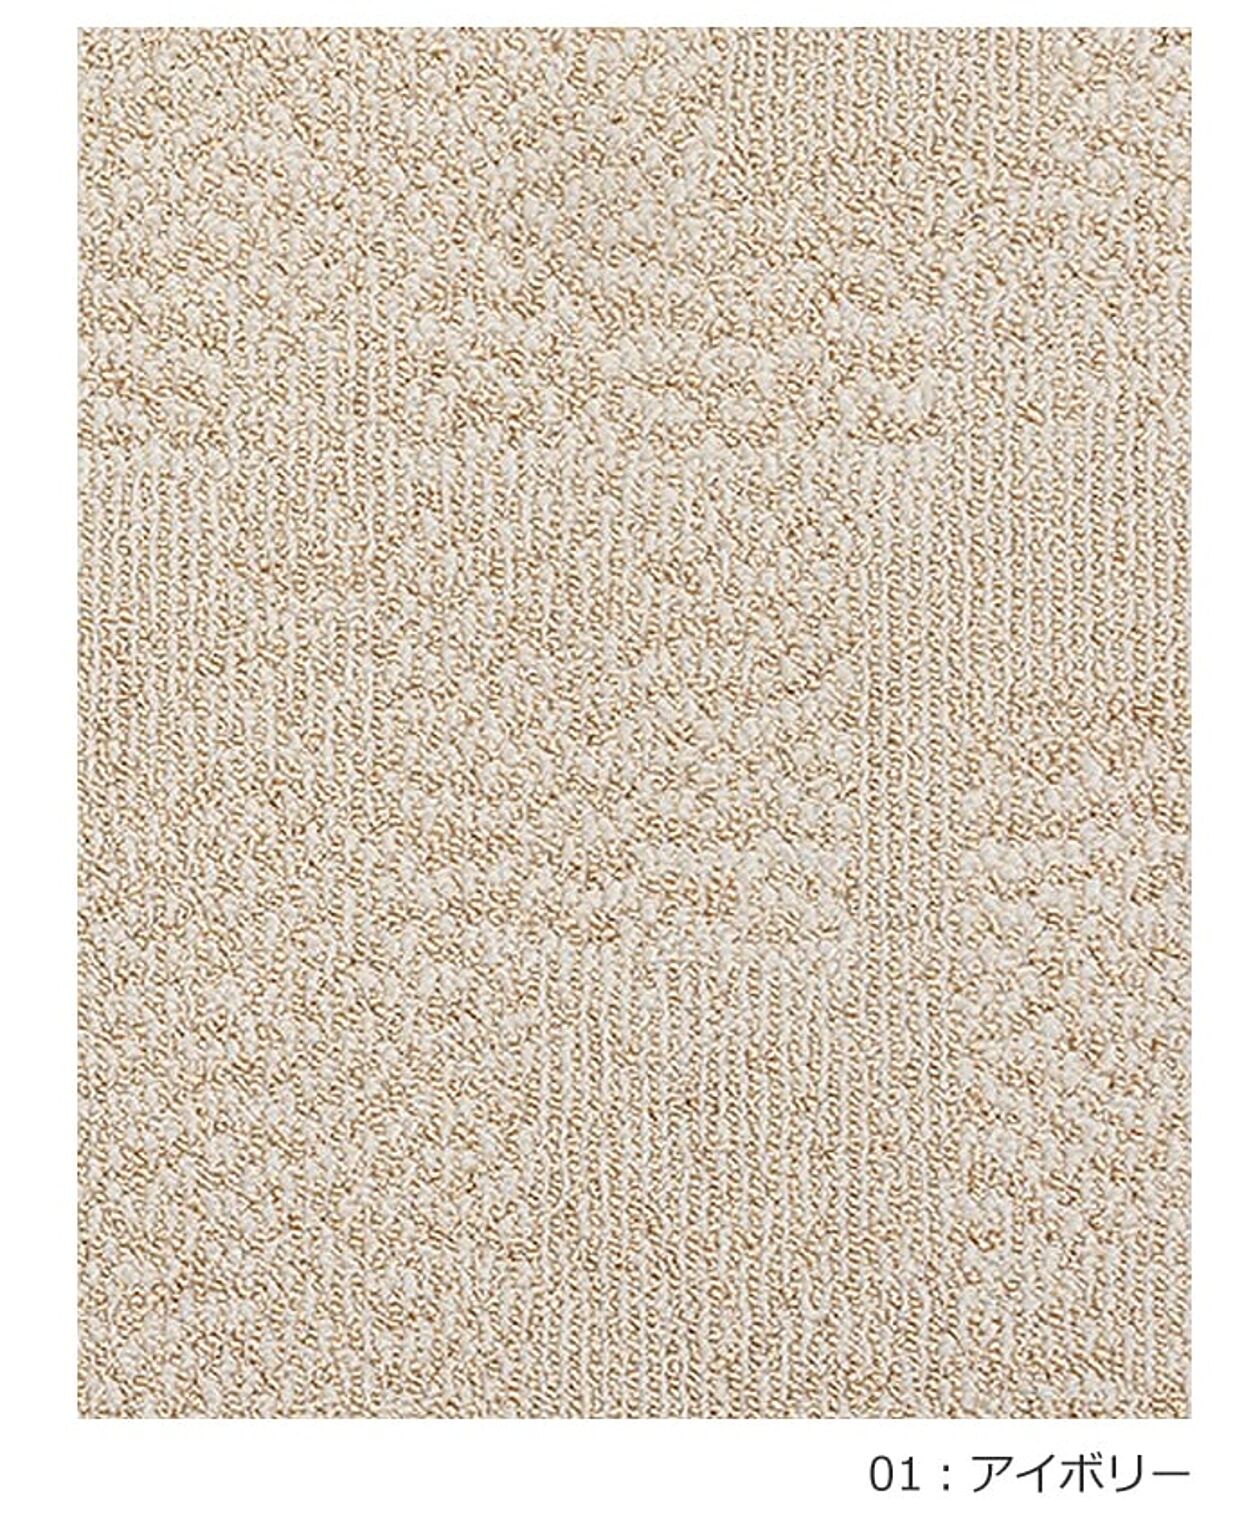 ラグ ラグマット 絨毯 日本製 カーペット prevell プレーベル ロルカ 江戸間12畳 約352×522cm 北欧 デザイン 防ダニ 抗菌 12帖 12畳 十二畳 引っ越し 新生活